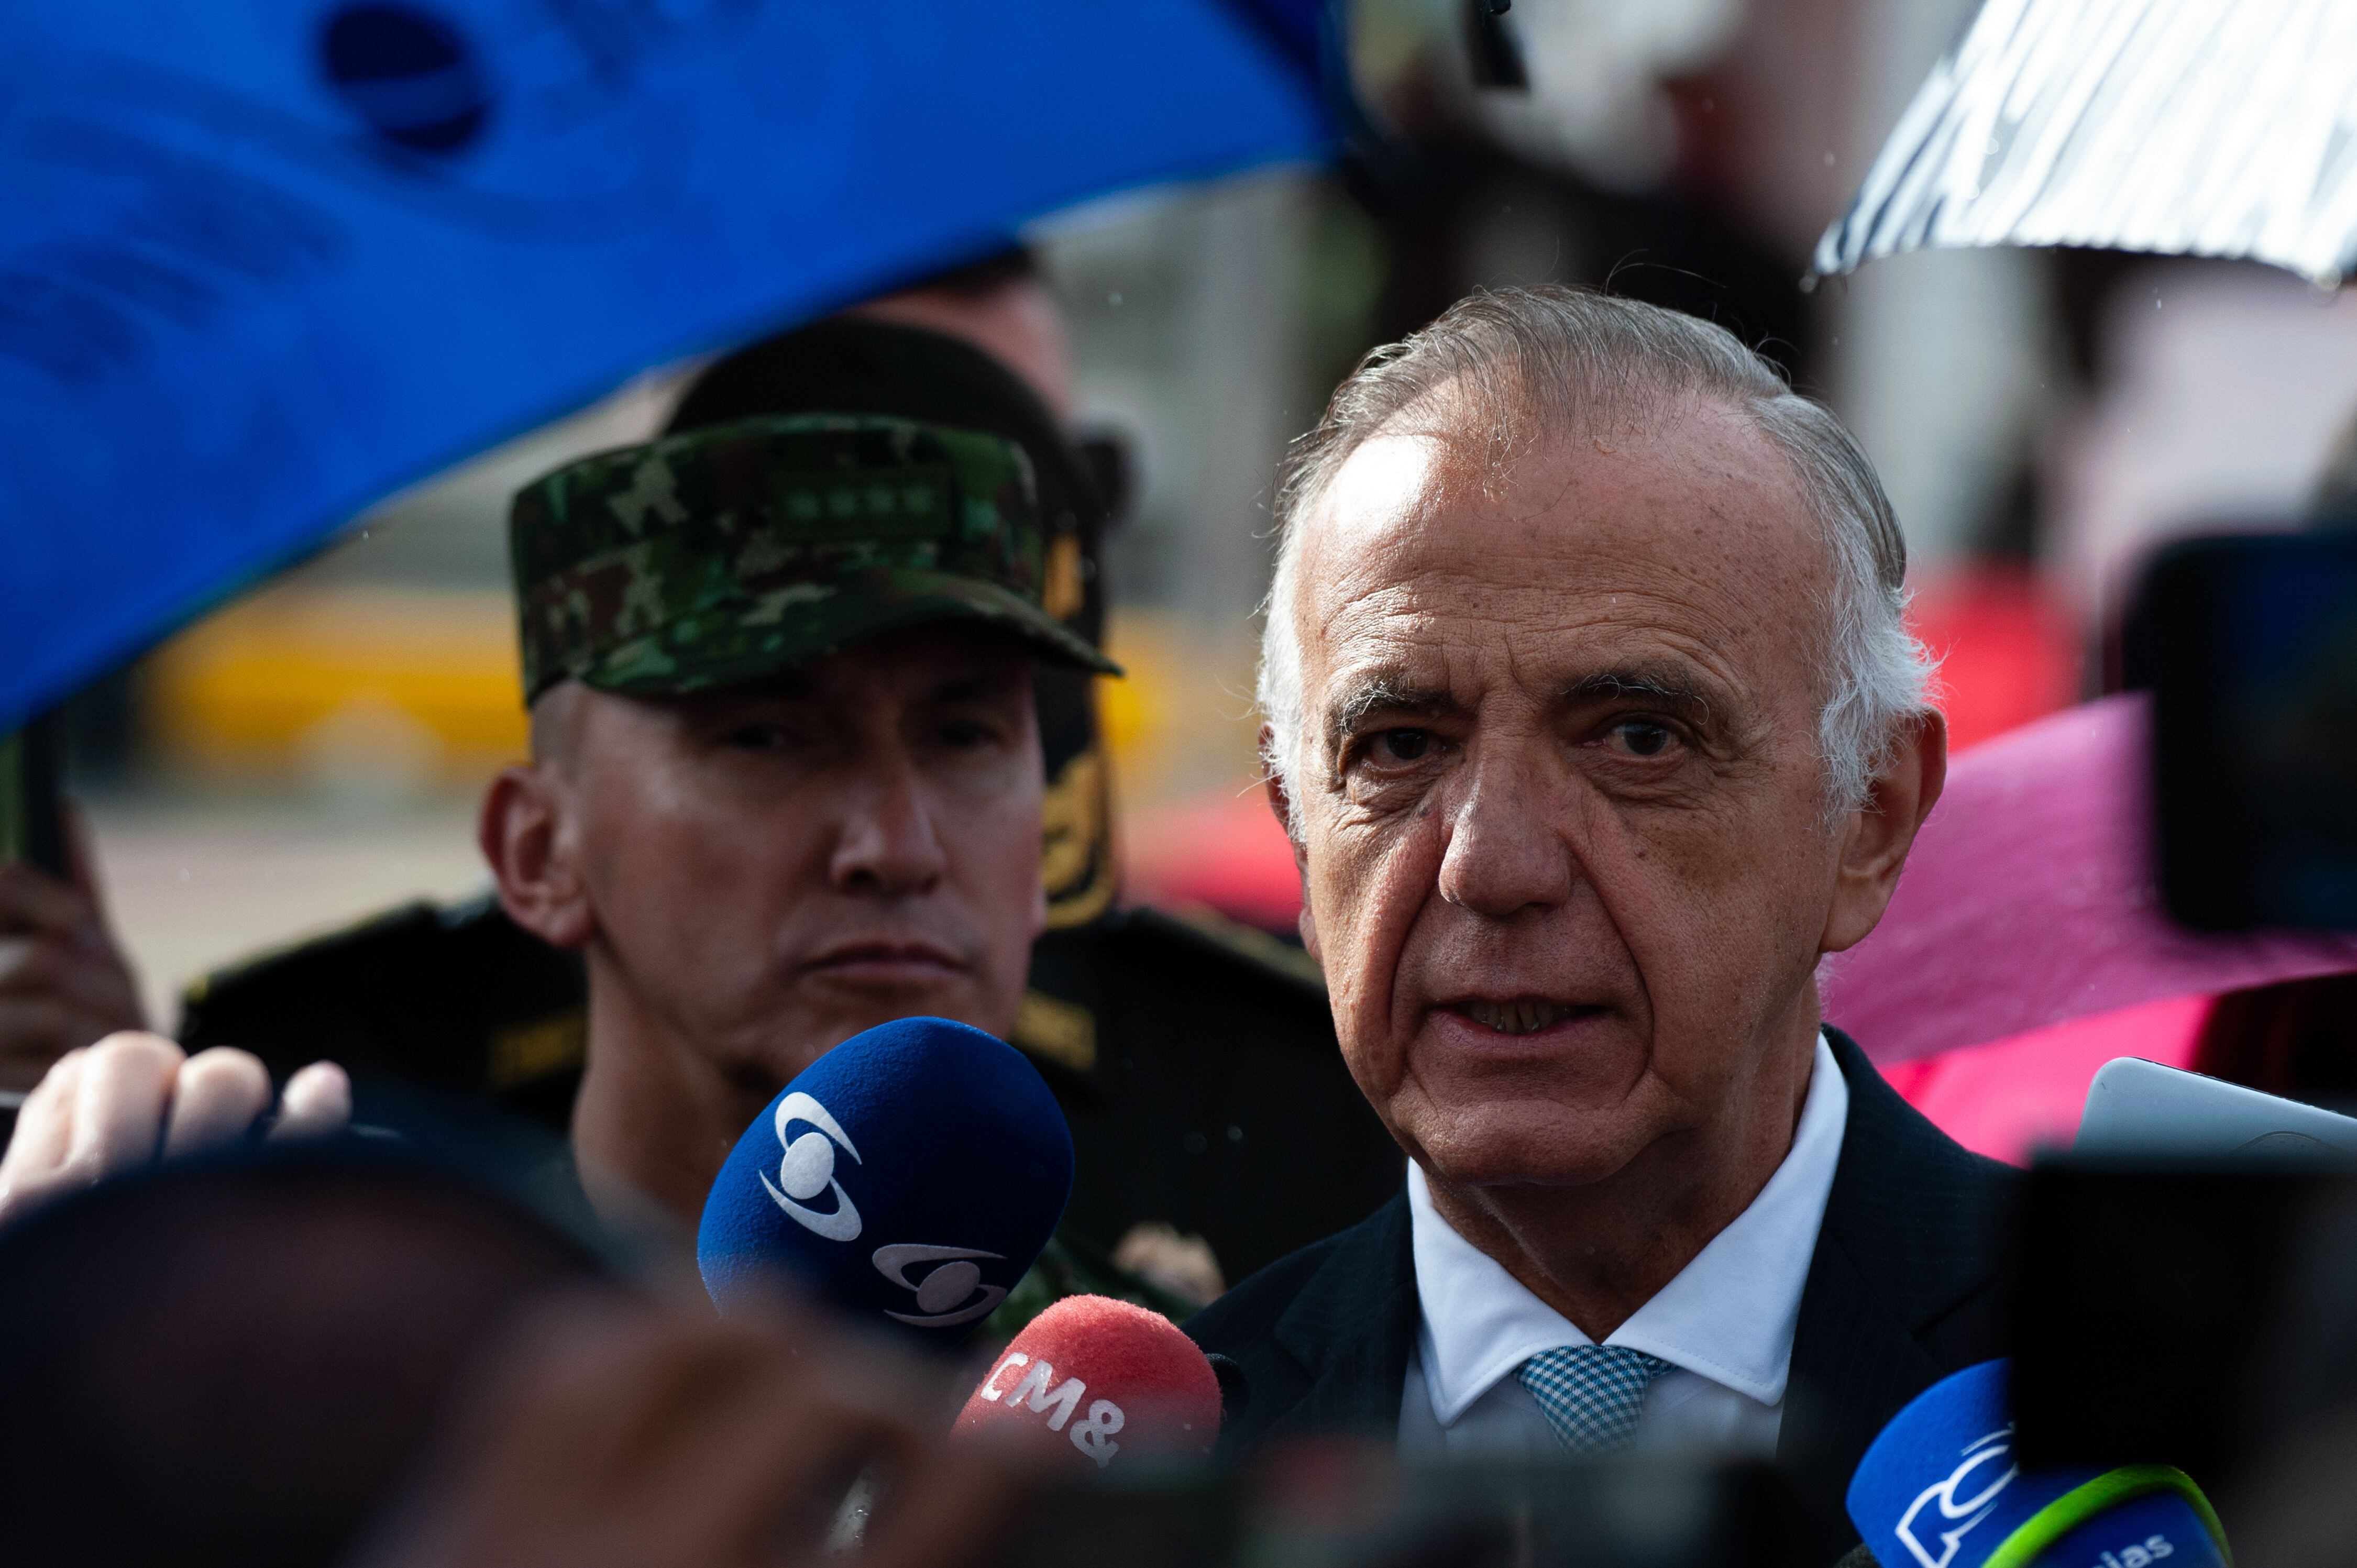 El ministro de Defensa cree que no hay voluntad de paz en las disidencias de las Farc - crédito Chepa Beltran / Europa Press 